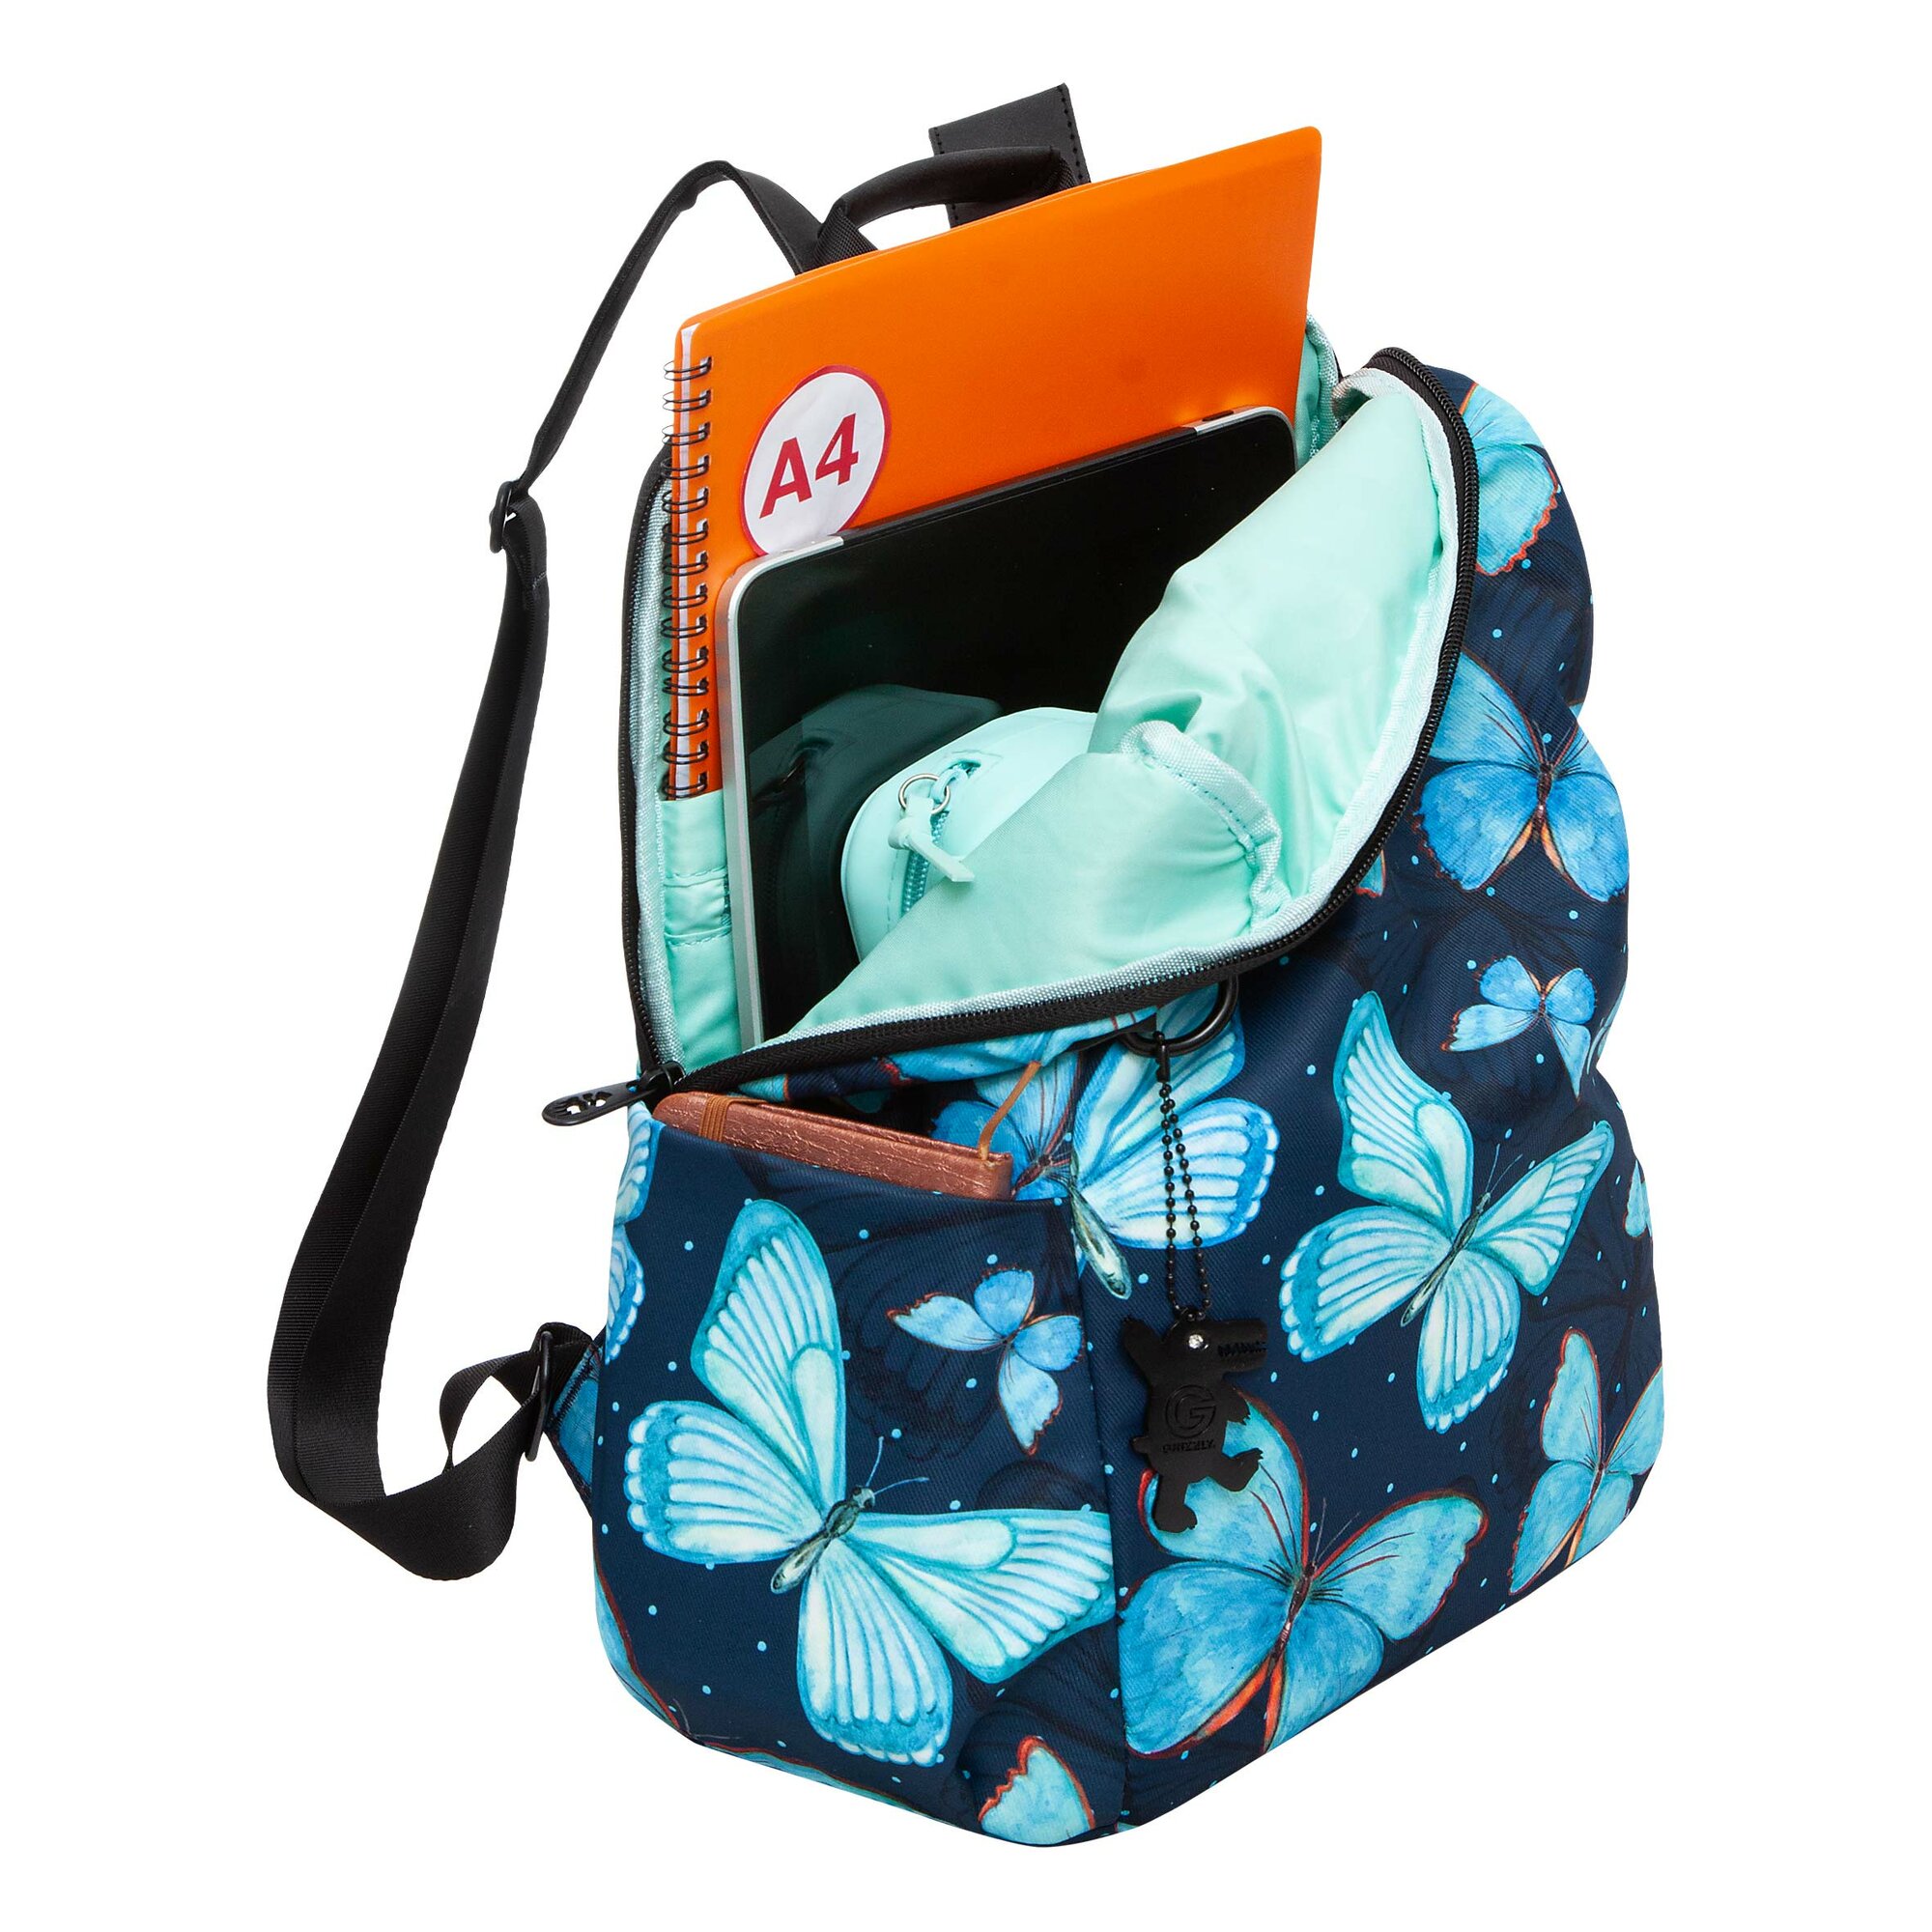 Стильный городской женский рюкзак GRIZZLY: легкий и практичный — для молодежи RXL-329-3/1